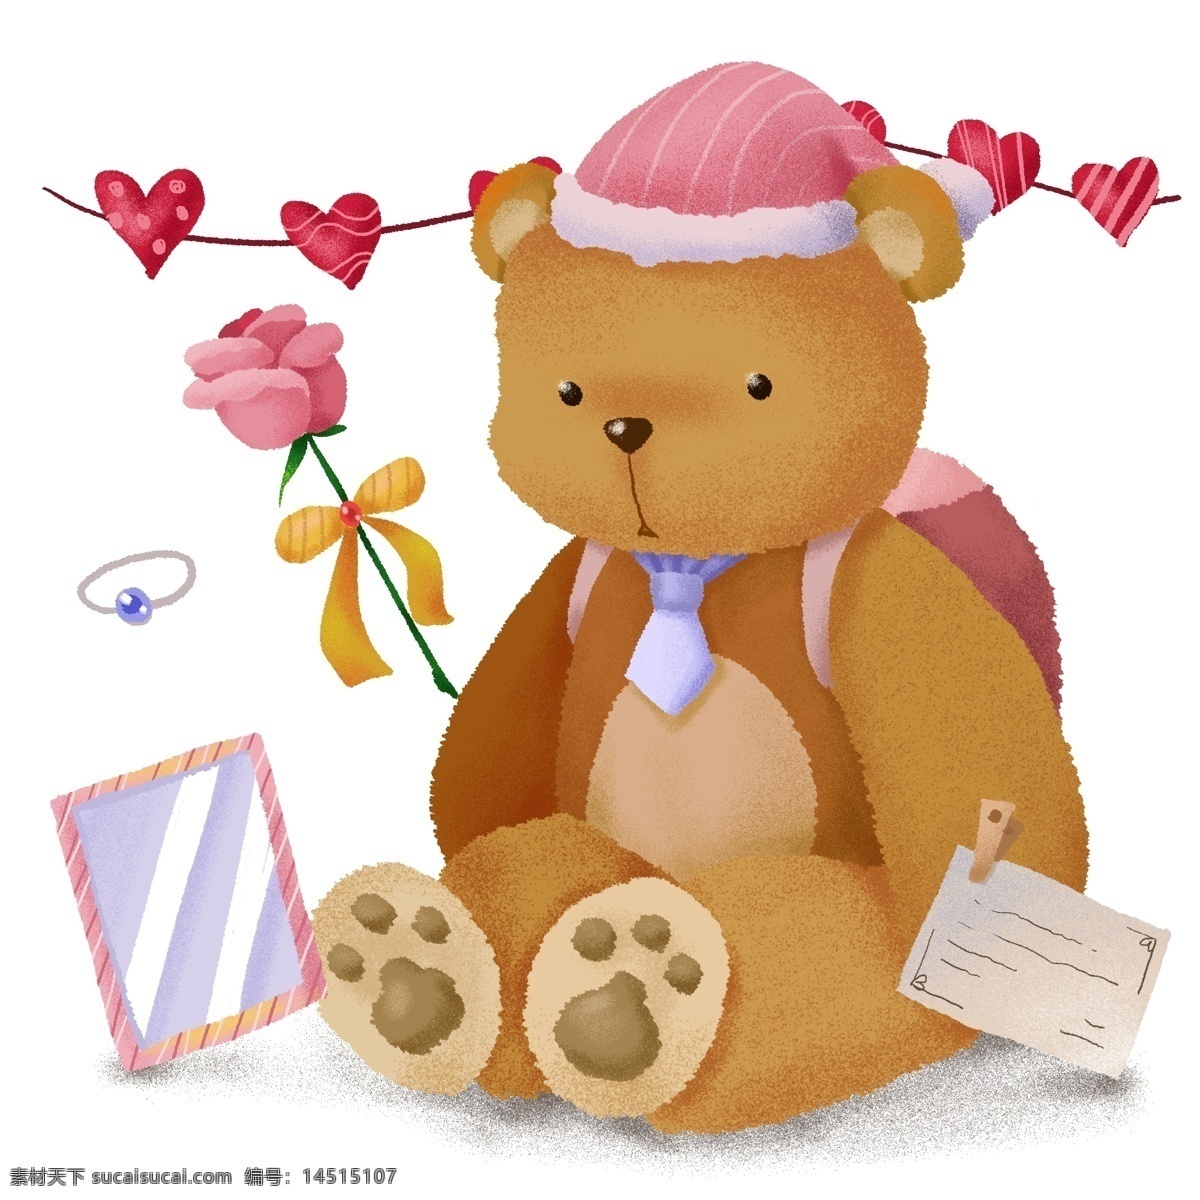 手绘 可爱 泰迪 熊 玫瑰花 明信片 送 女孩 礼物 泰迪熊 送女孩 生日礼物 少女 卡通 呆萌 毛绒玩具 心形 镜子 精致